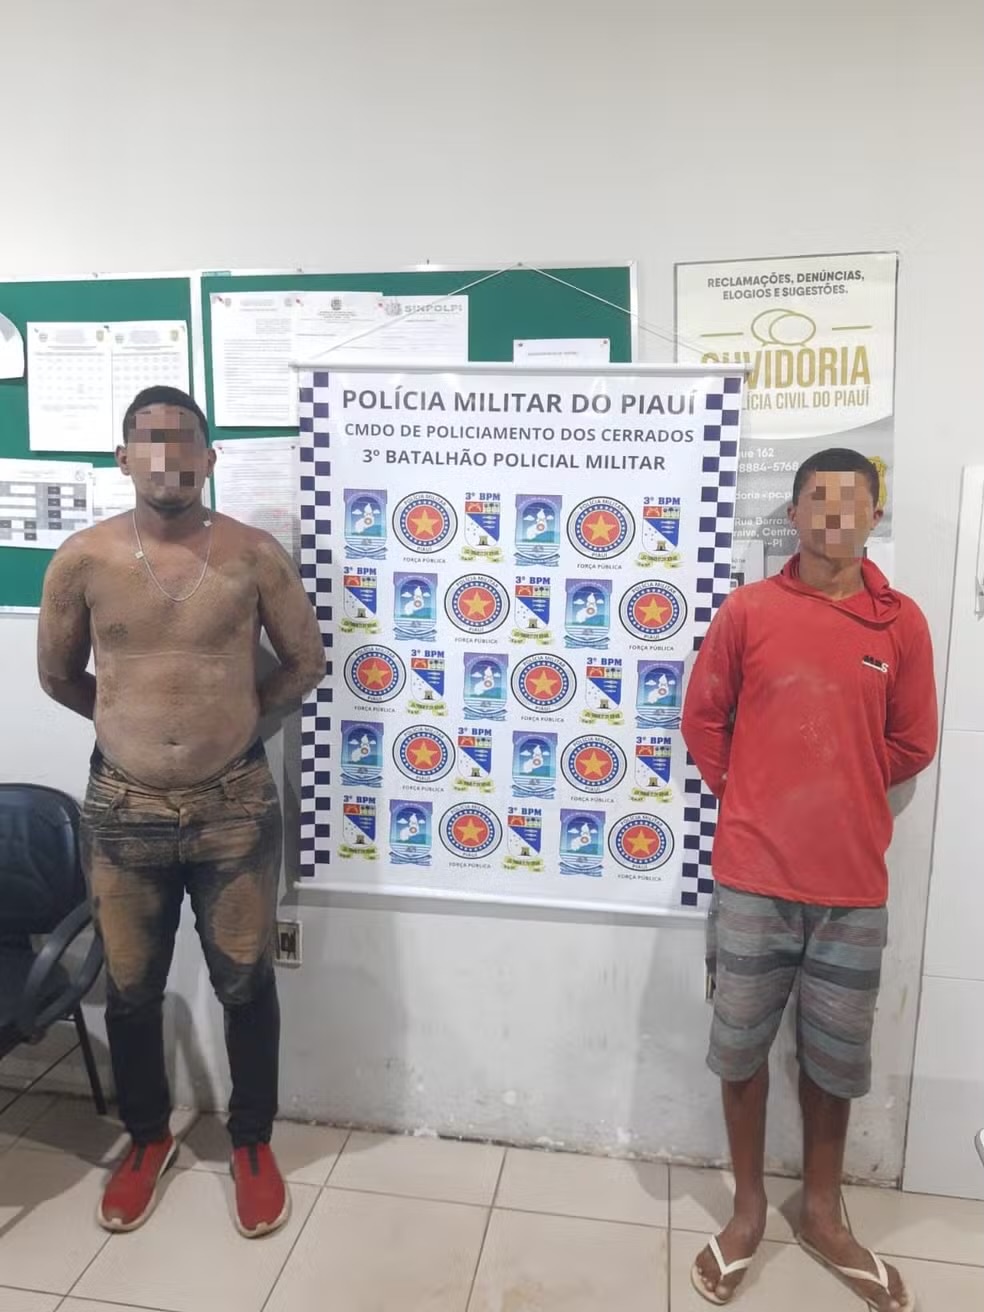 Os dois homens foram capturado no quintal de uma residência sem muro, próximo ao escritório de contabilidade onde realizaram o assalto, em Floriano-PI